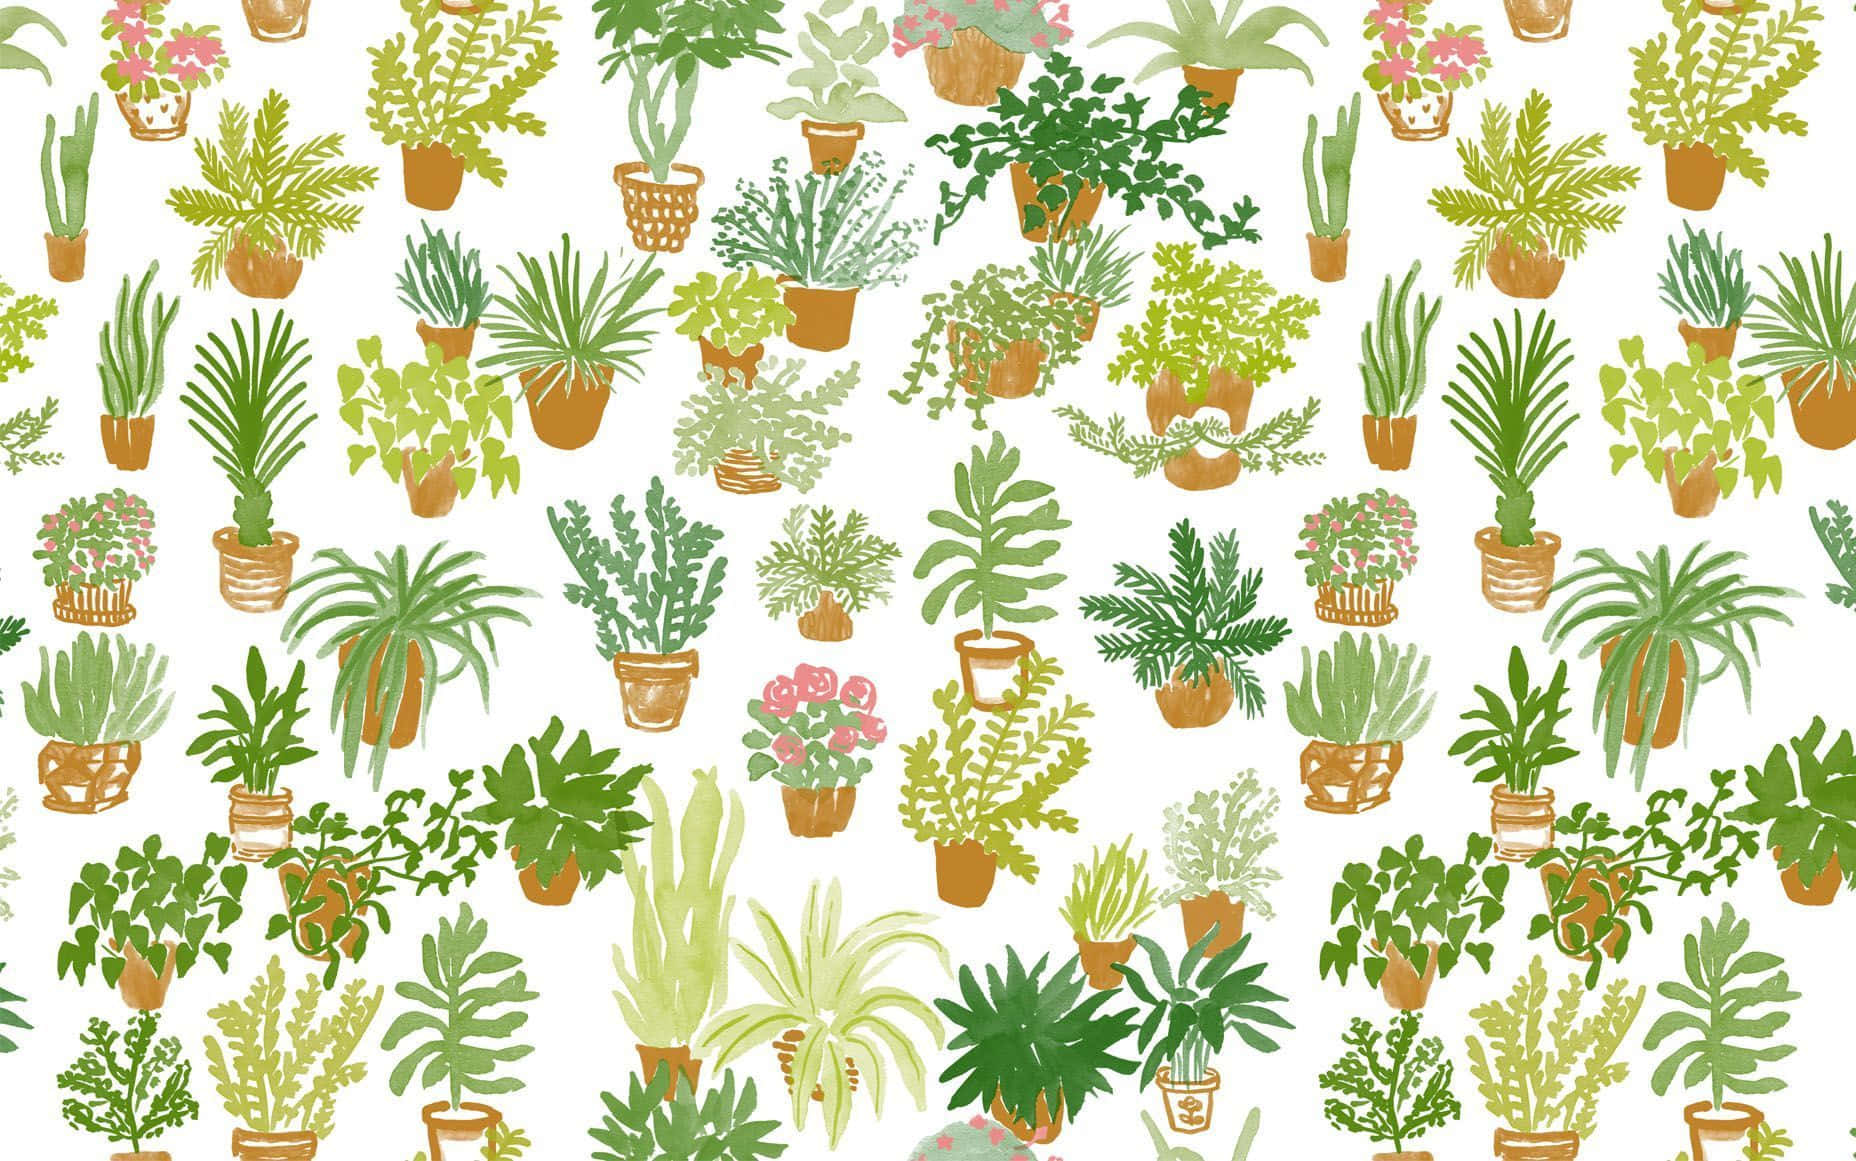 Tilføj nogle ekstra farver og liv til dit hjemmeindretning med denne søde og æstetiske plante! Wallpaper